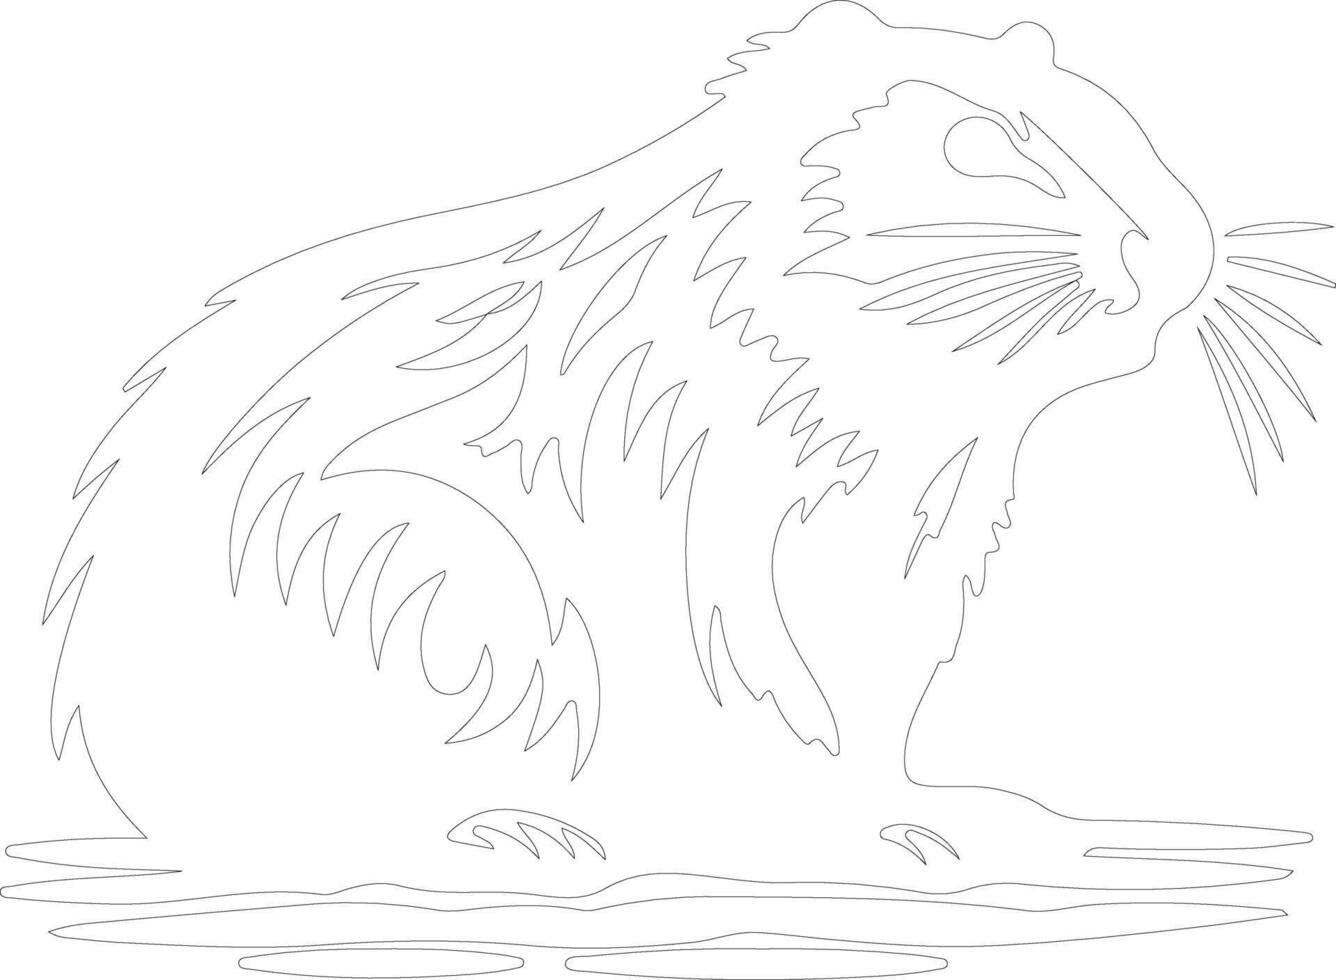 beaver  outline silhouette vector